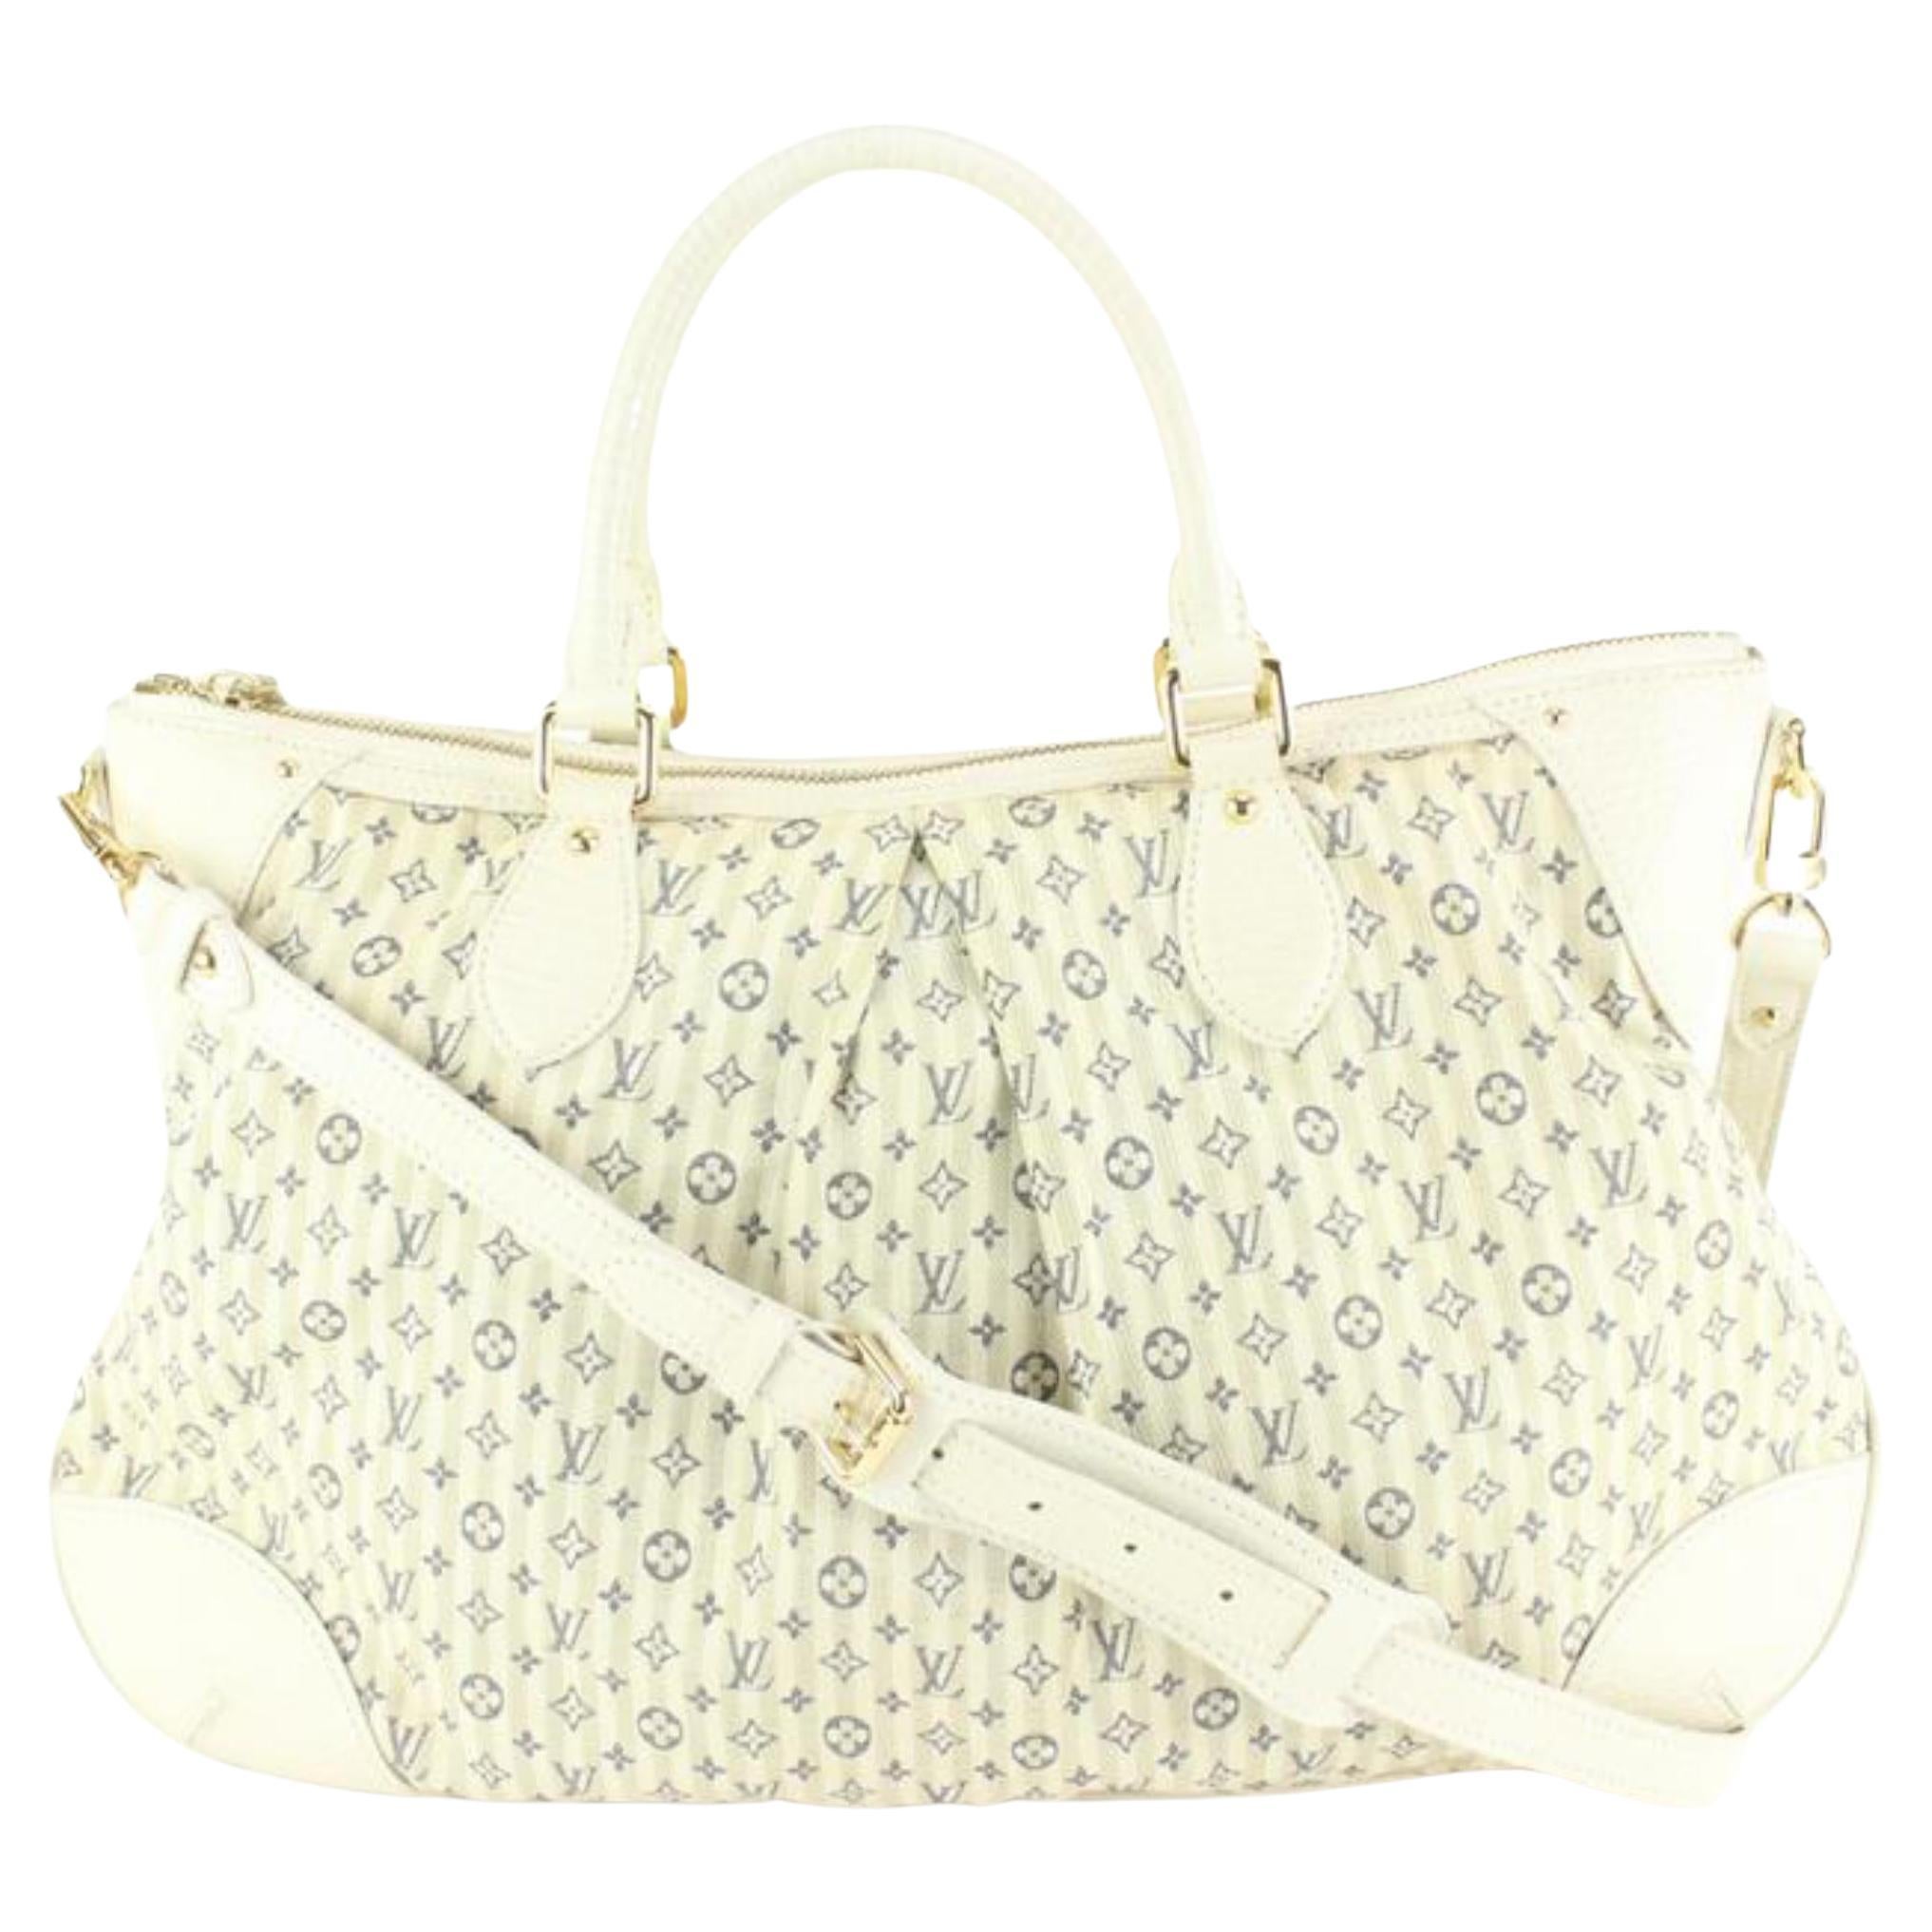 Louis Vuitton Croisette 2way Shoulder Bag(White)